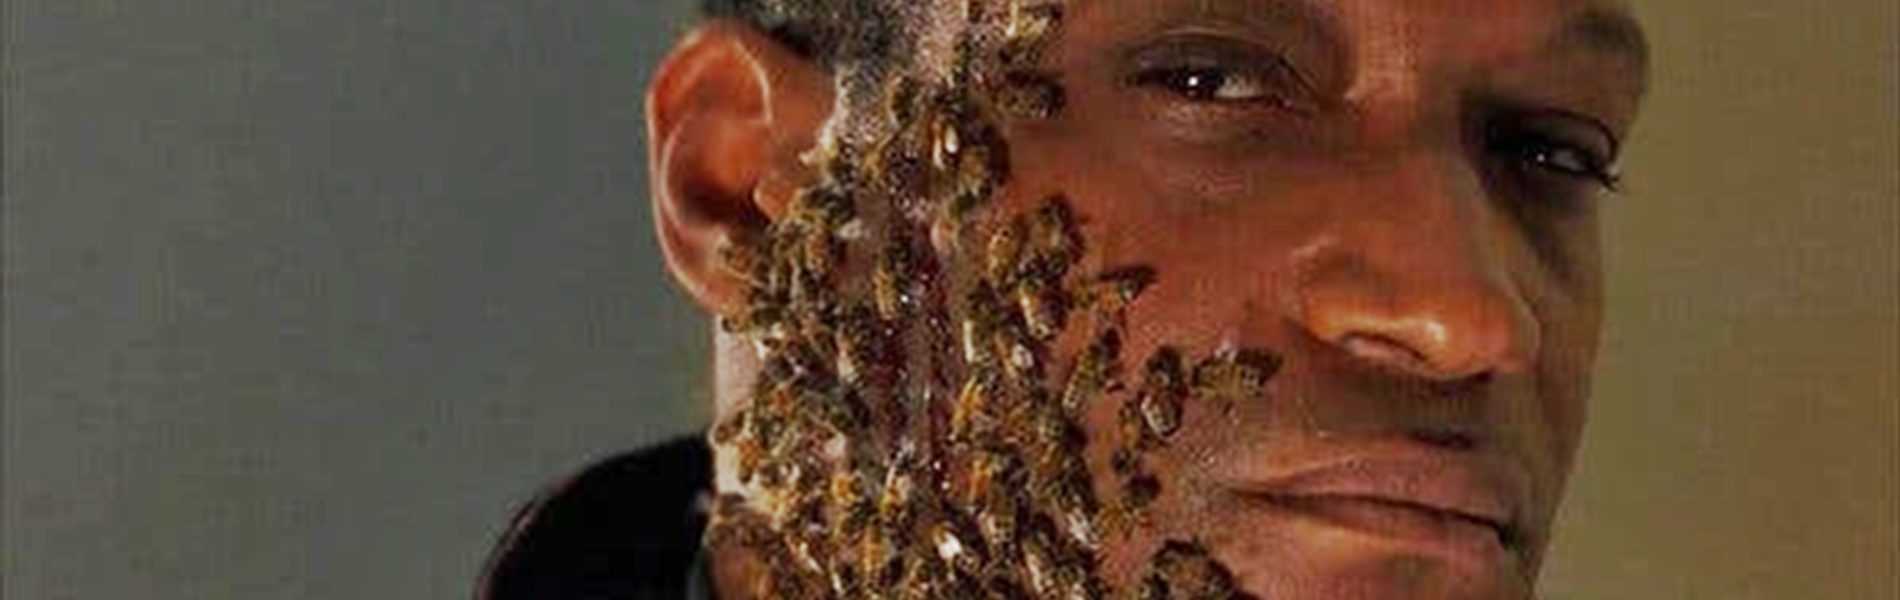 Tony Todd majdnem halálra csípette magát méhekkel a Kampókéz című horrorfilm kedvéért